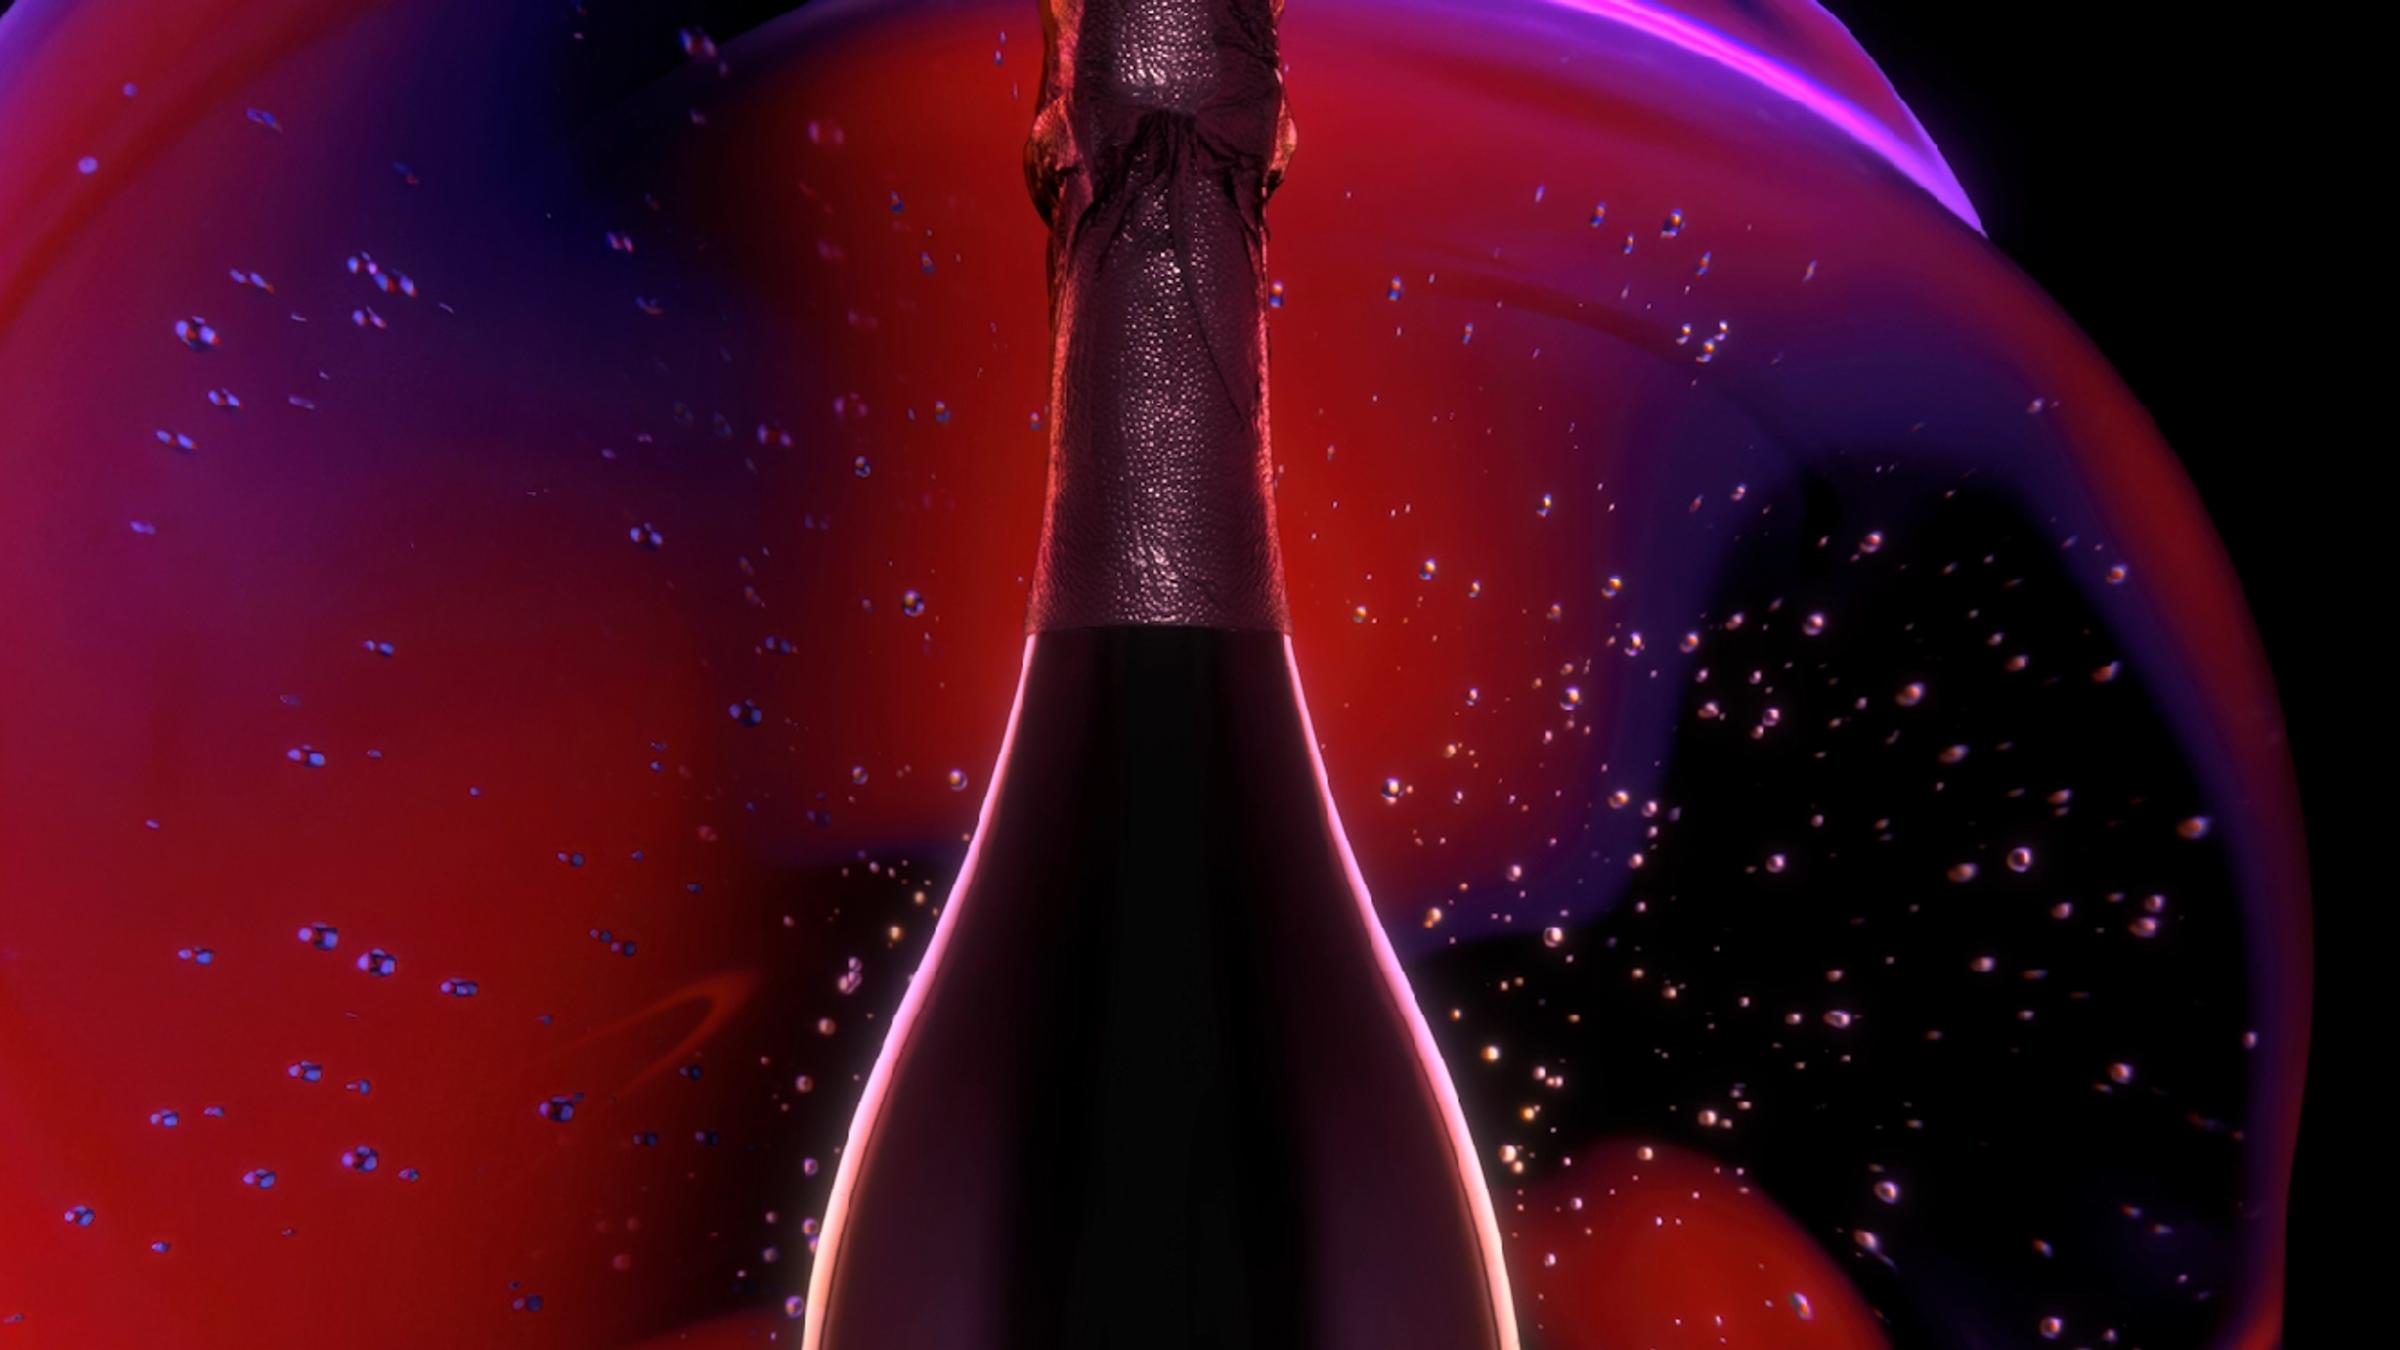 Champagne Rosé 2008 - A radical assemblage - Dom Pérignon